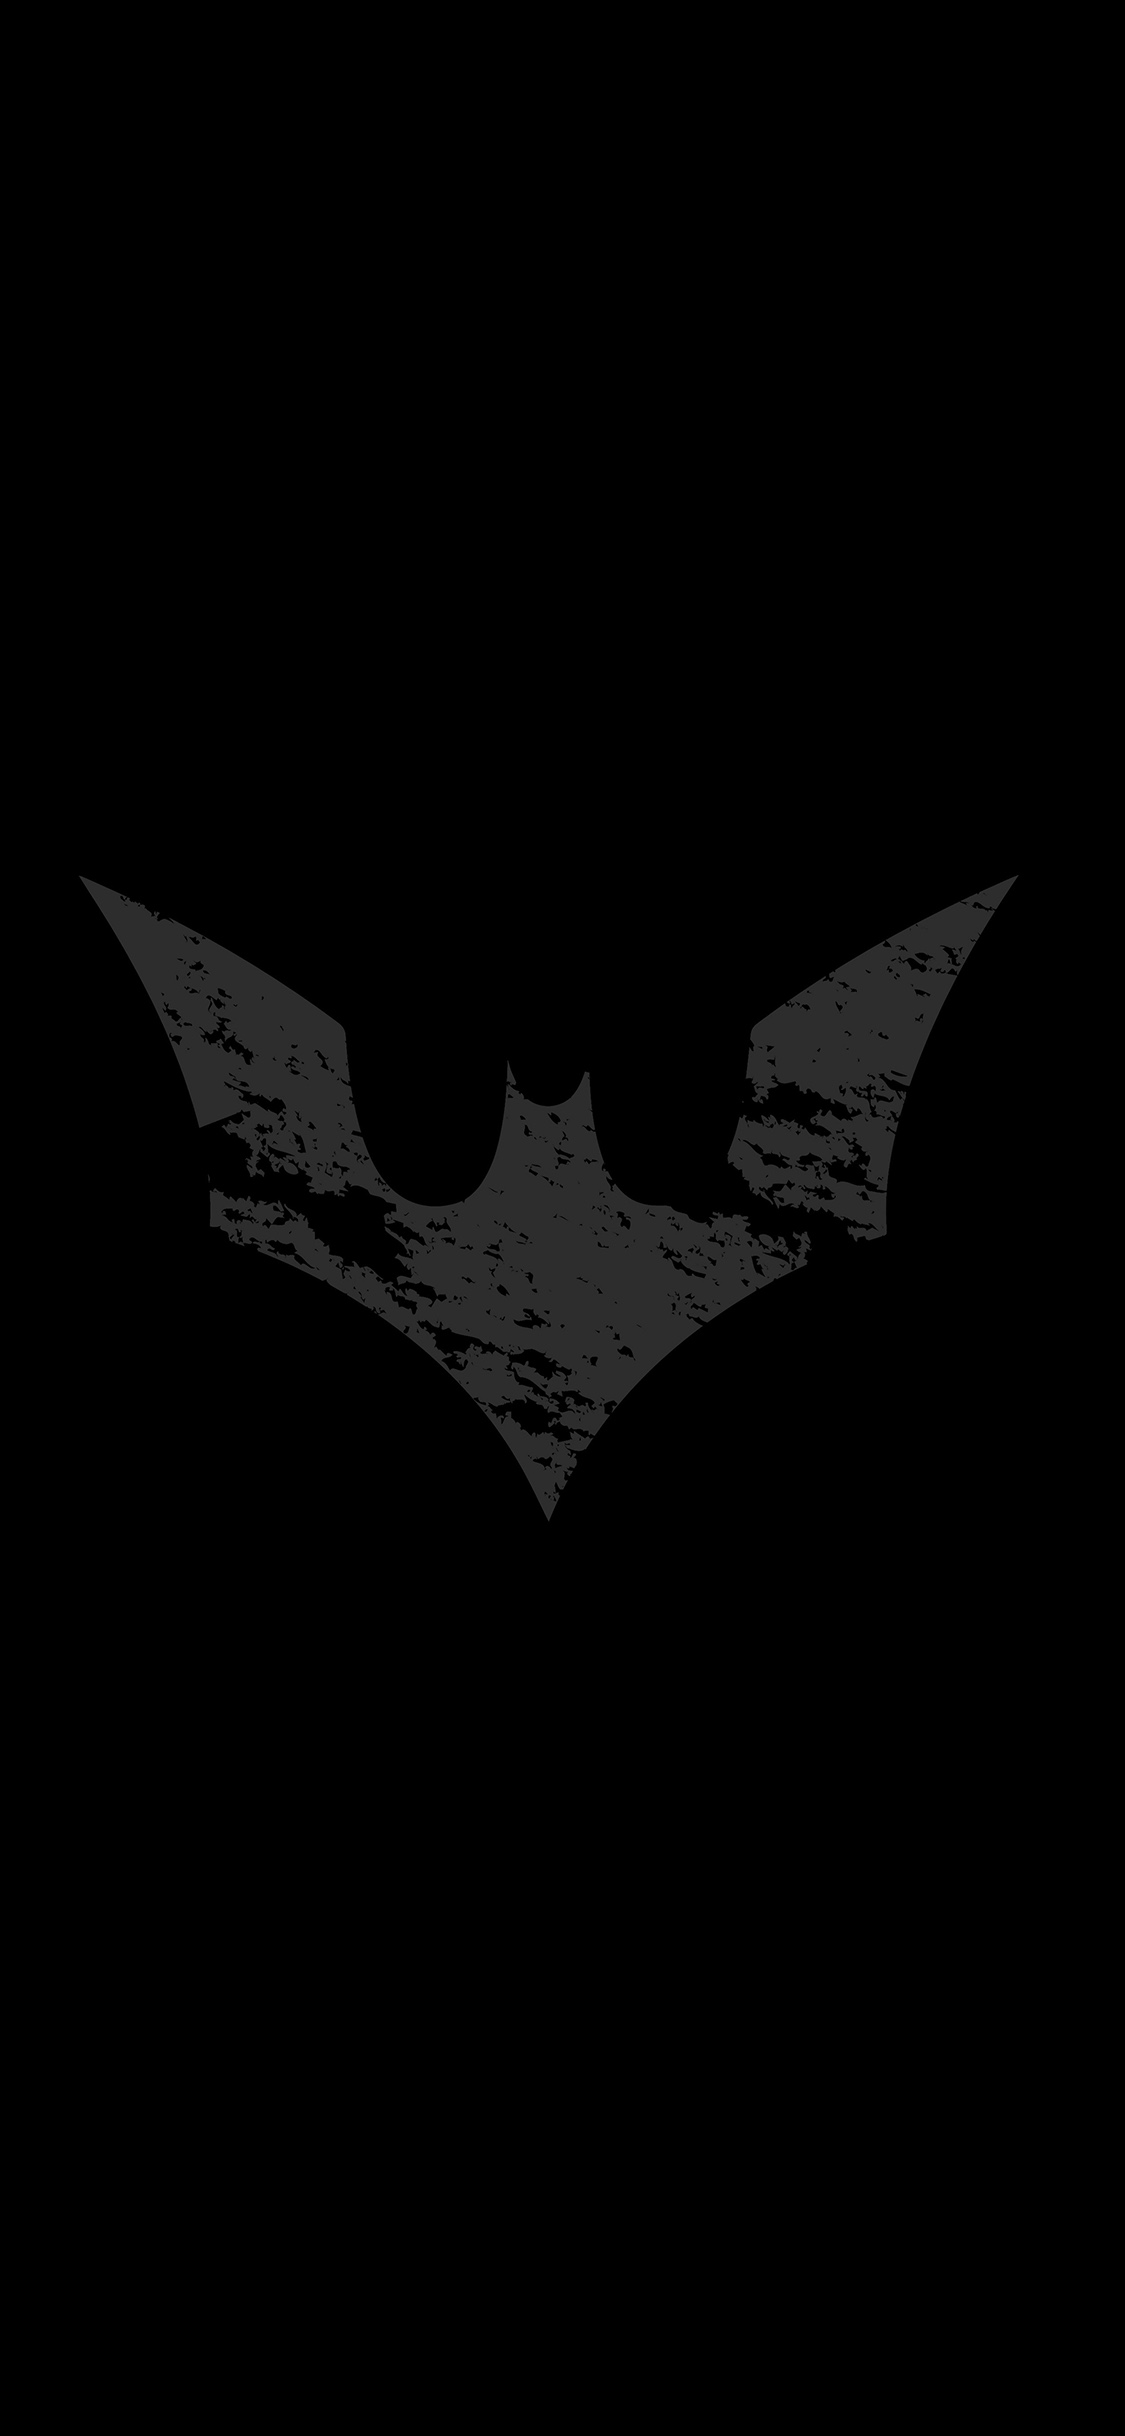 iPhone X wallpaper. batman logo dark hero art bw